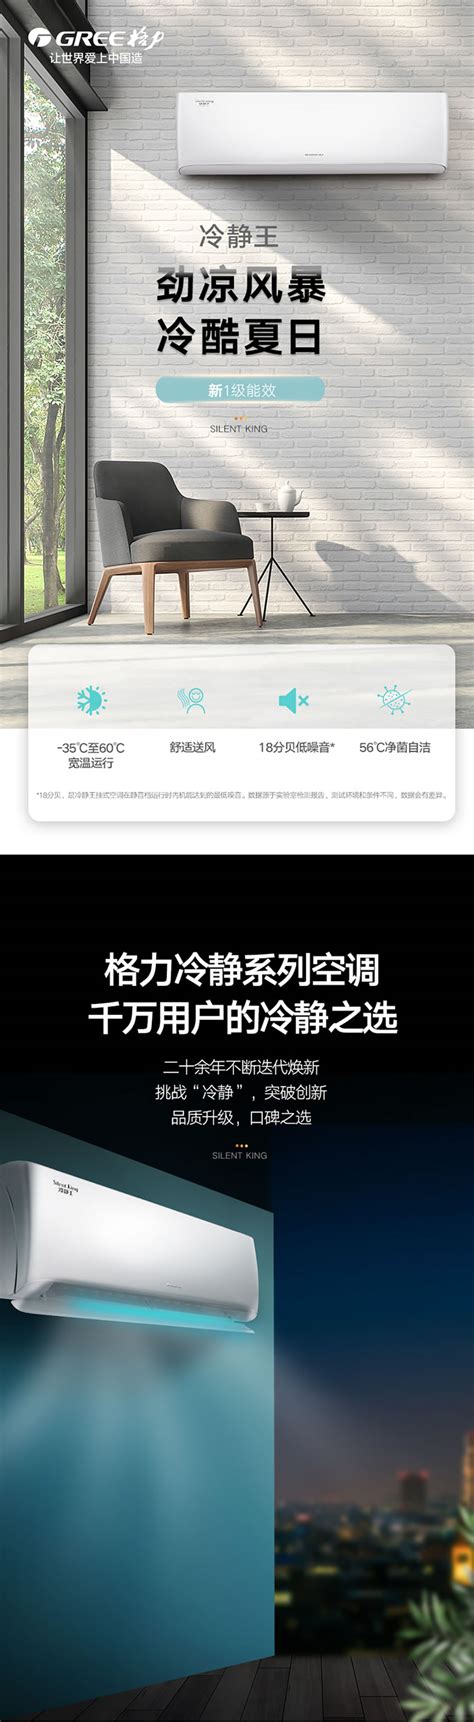 格力冷静王_精品空调_壁挂式空调 - 上海贝朗电器有限公司